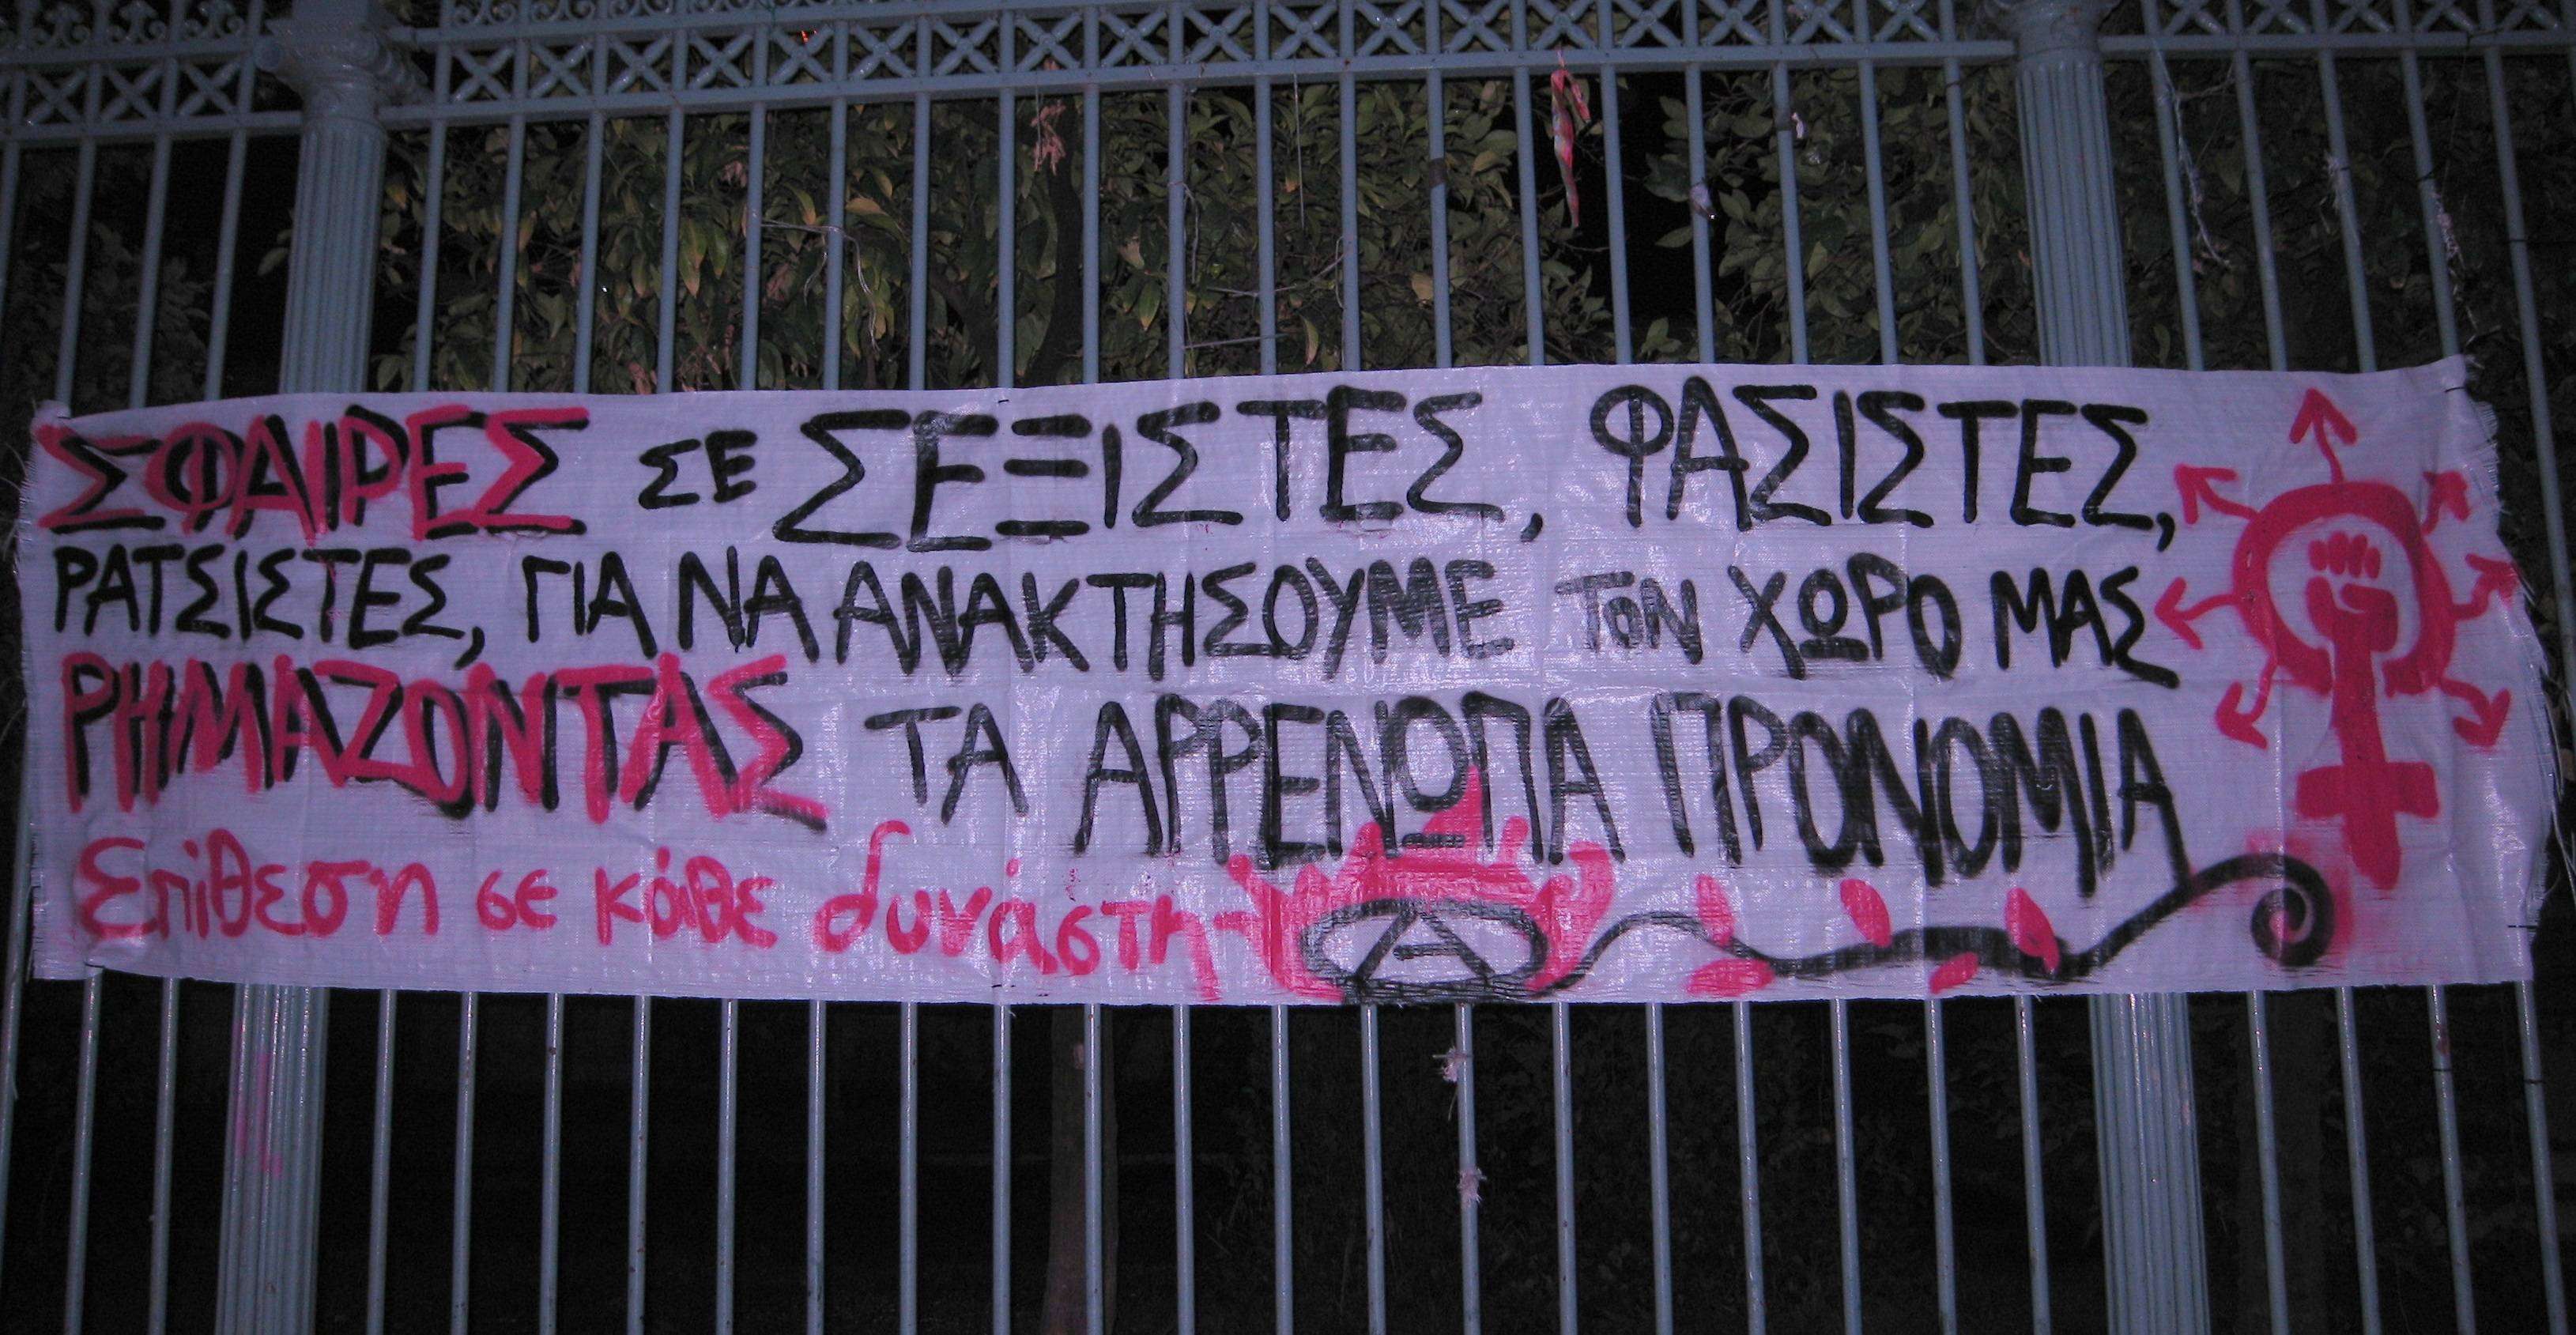 Αθήνα: Ενάντια στον σεξισμό εντός και εκτός του α/α χώρου: Διαθεματικός αναρχοφεμινισμός [Πανό + Κείμενο]